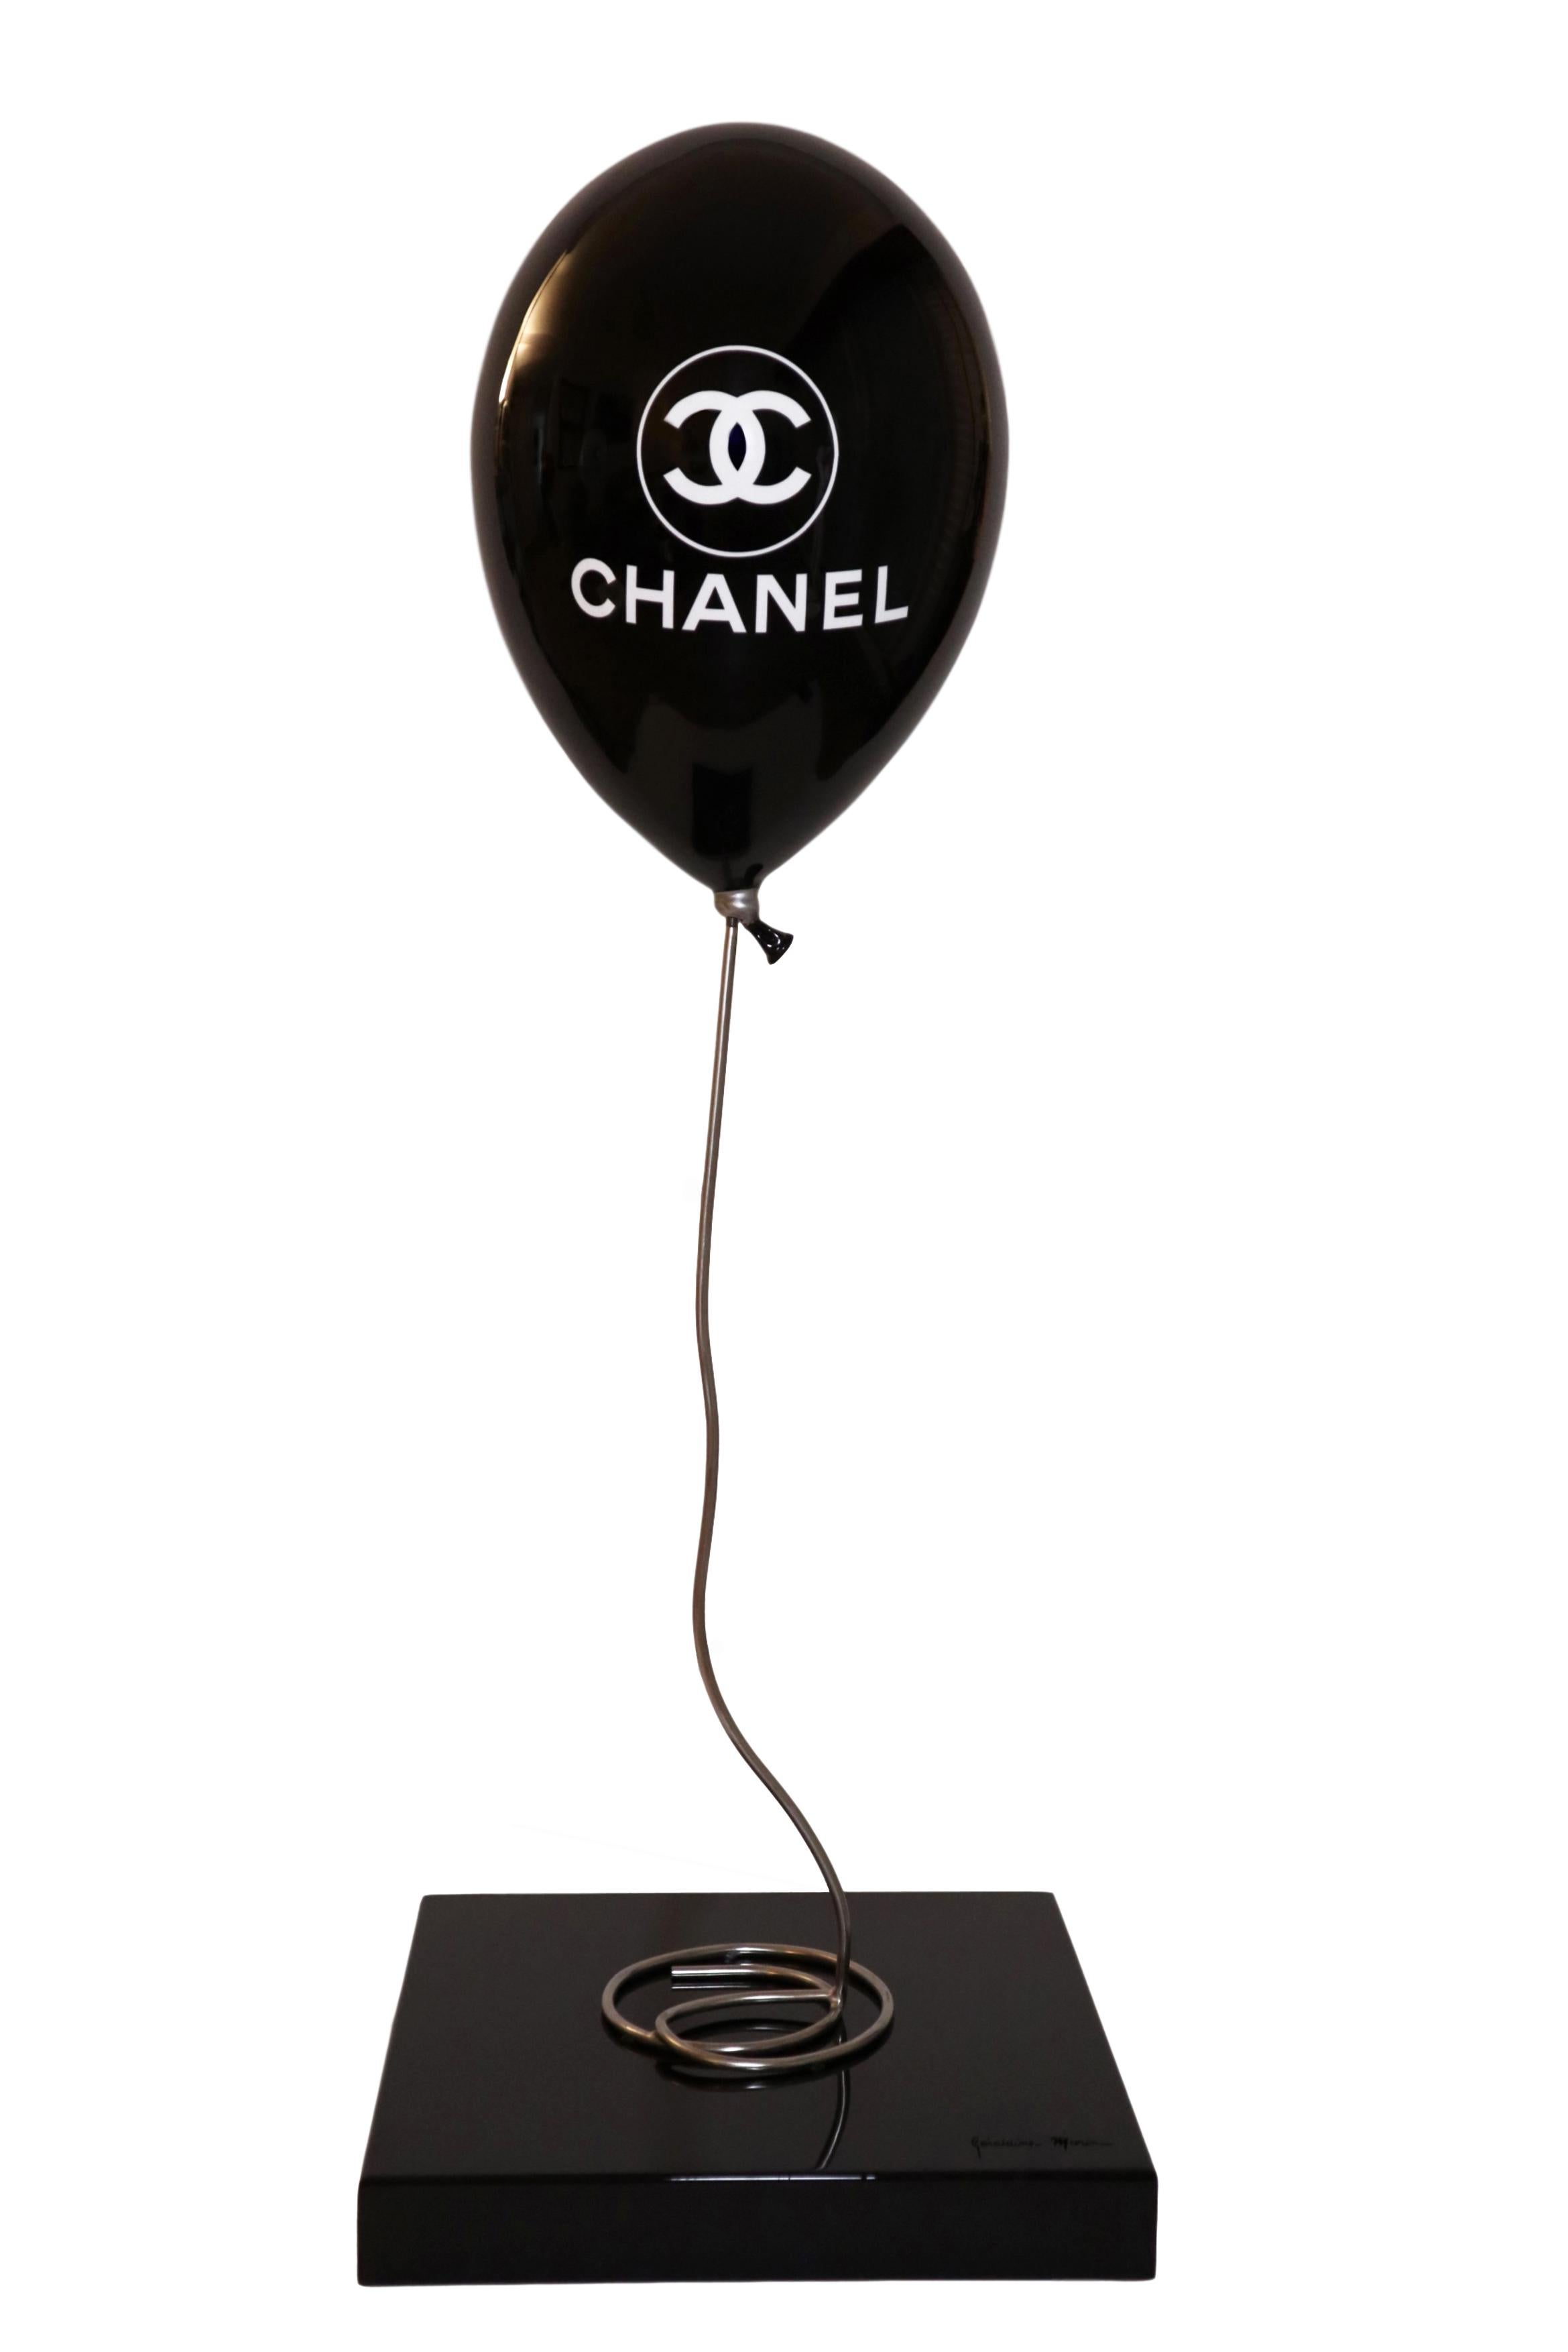 Geraldine Morin - Ballon Chanel sur 1stDibs